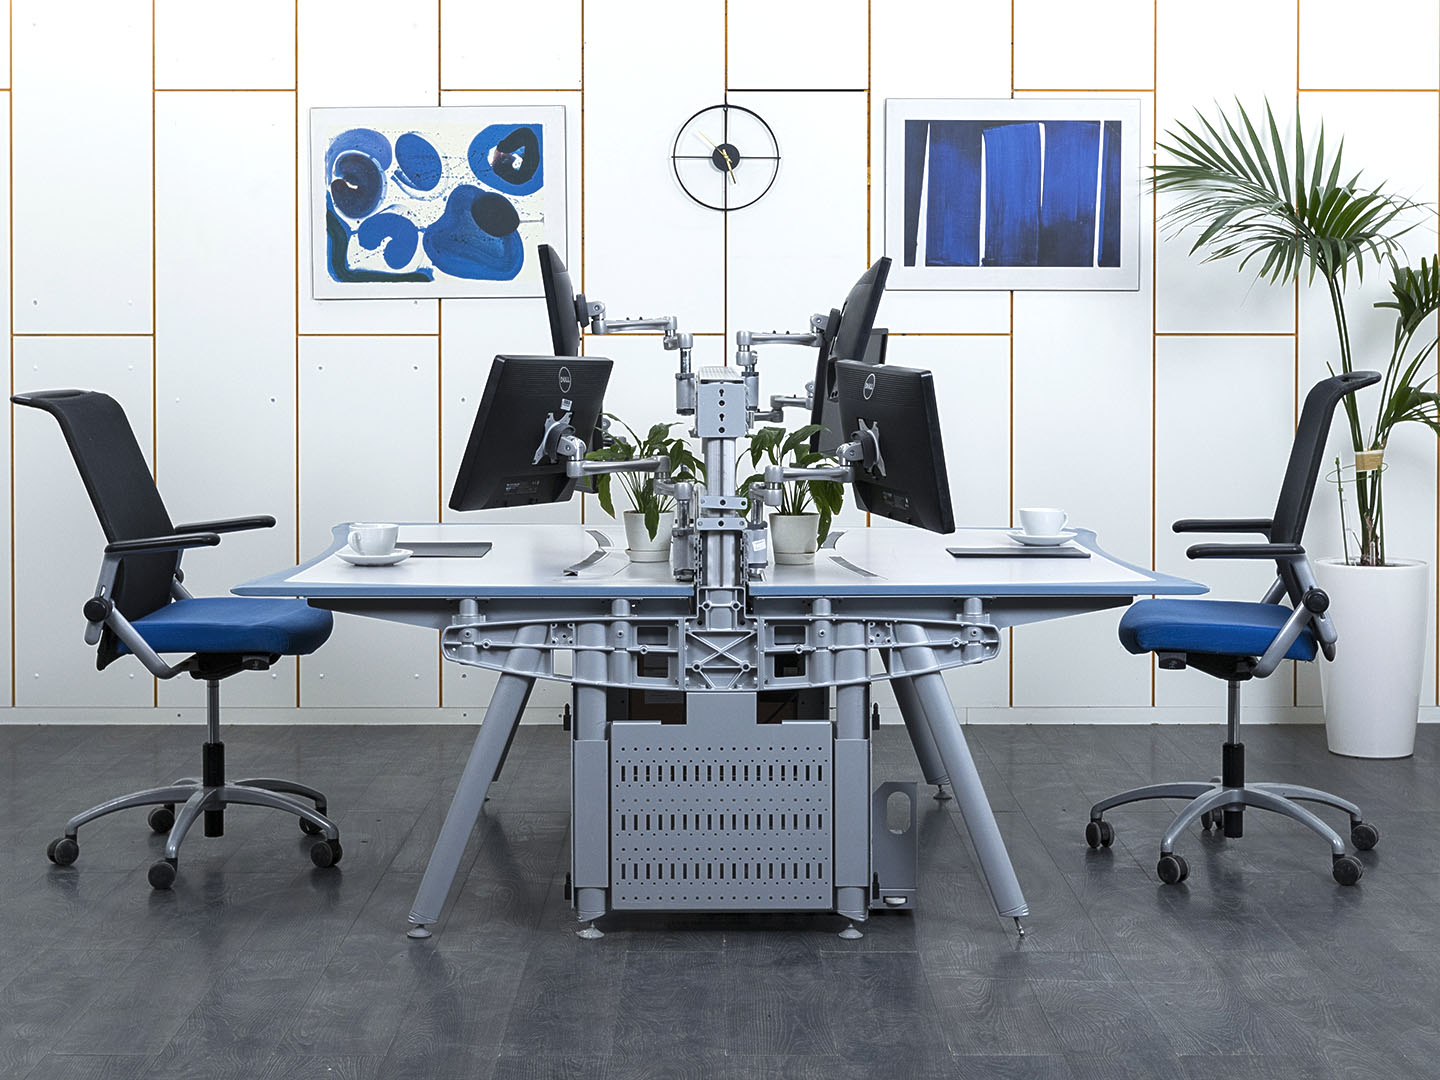 Комплект офисной мебели стол с тумбой  2 000х1 500х730 ЛДСП Серый   (КОМС-20121)